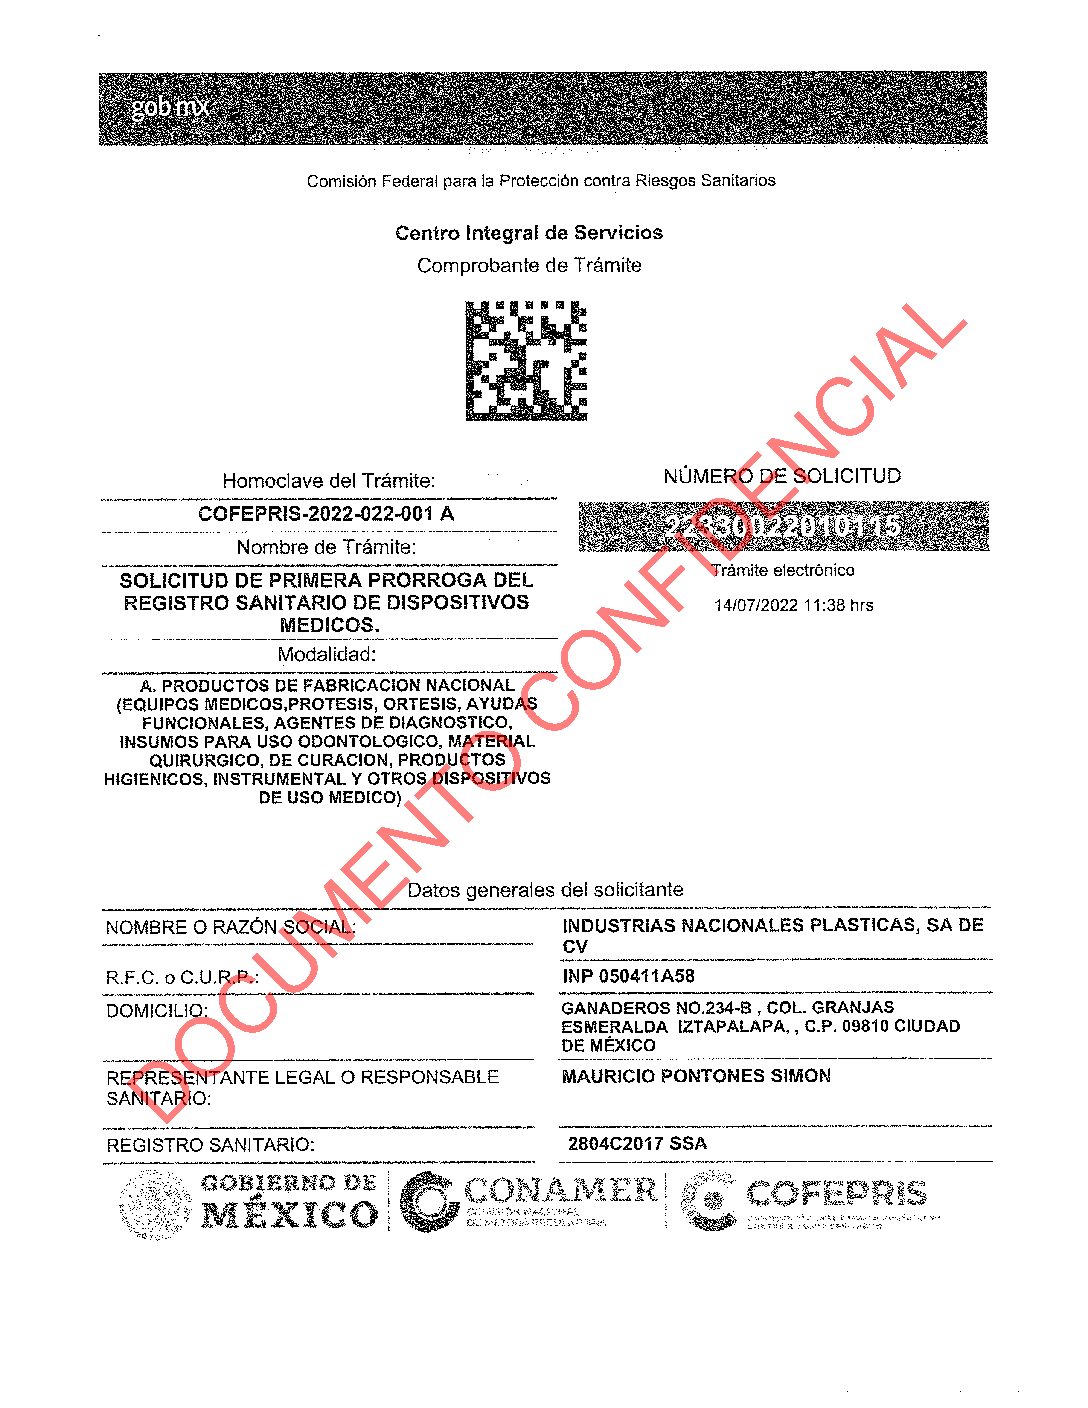 Registros Sanitarios Int V220 Medicapolarisweb 8758